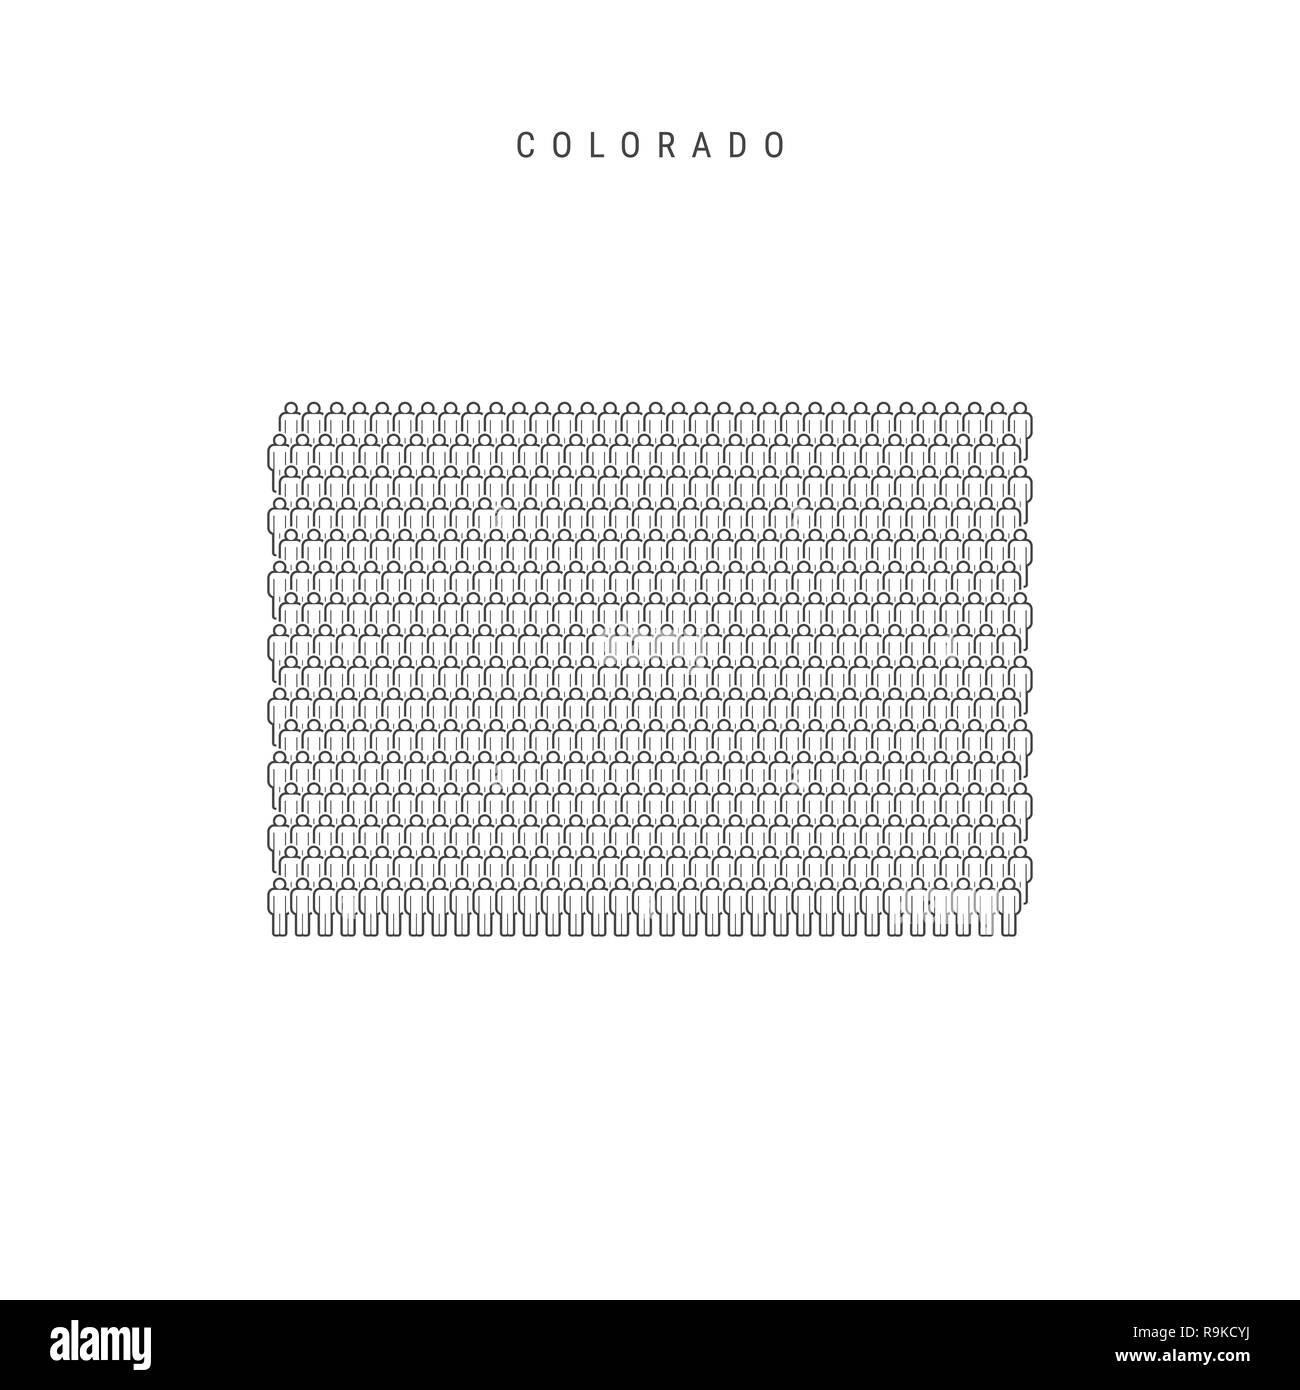 Leute Karte von Colorado, USA. Stilisierte Silhouette, Leute in der Form einer Karte von Colorado. Colorado Bevölkerung. Abbildung isoliert auf W Stockfoto